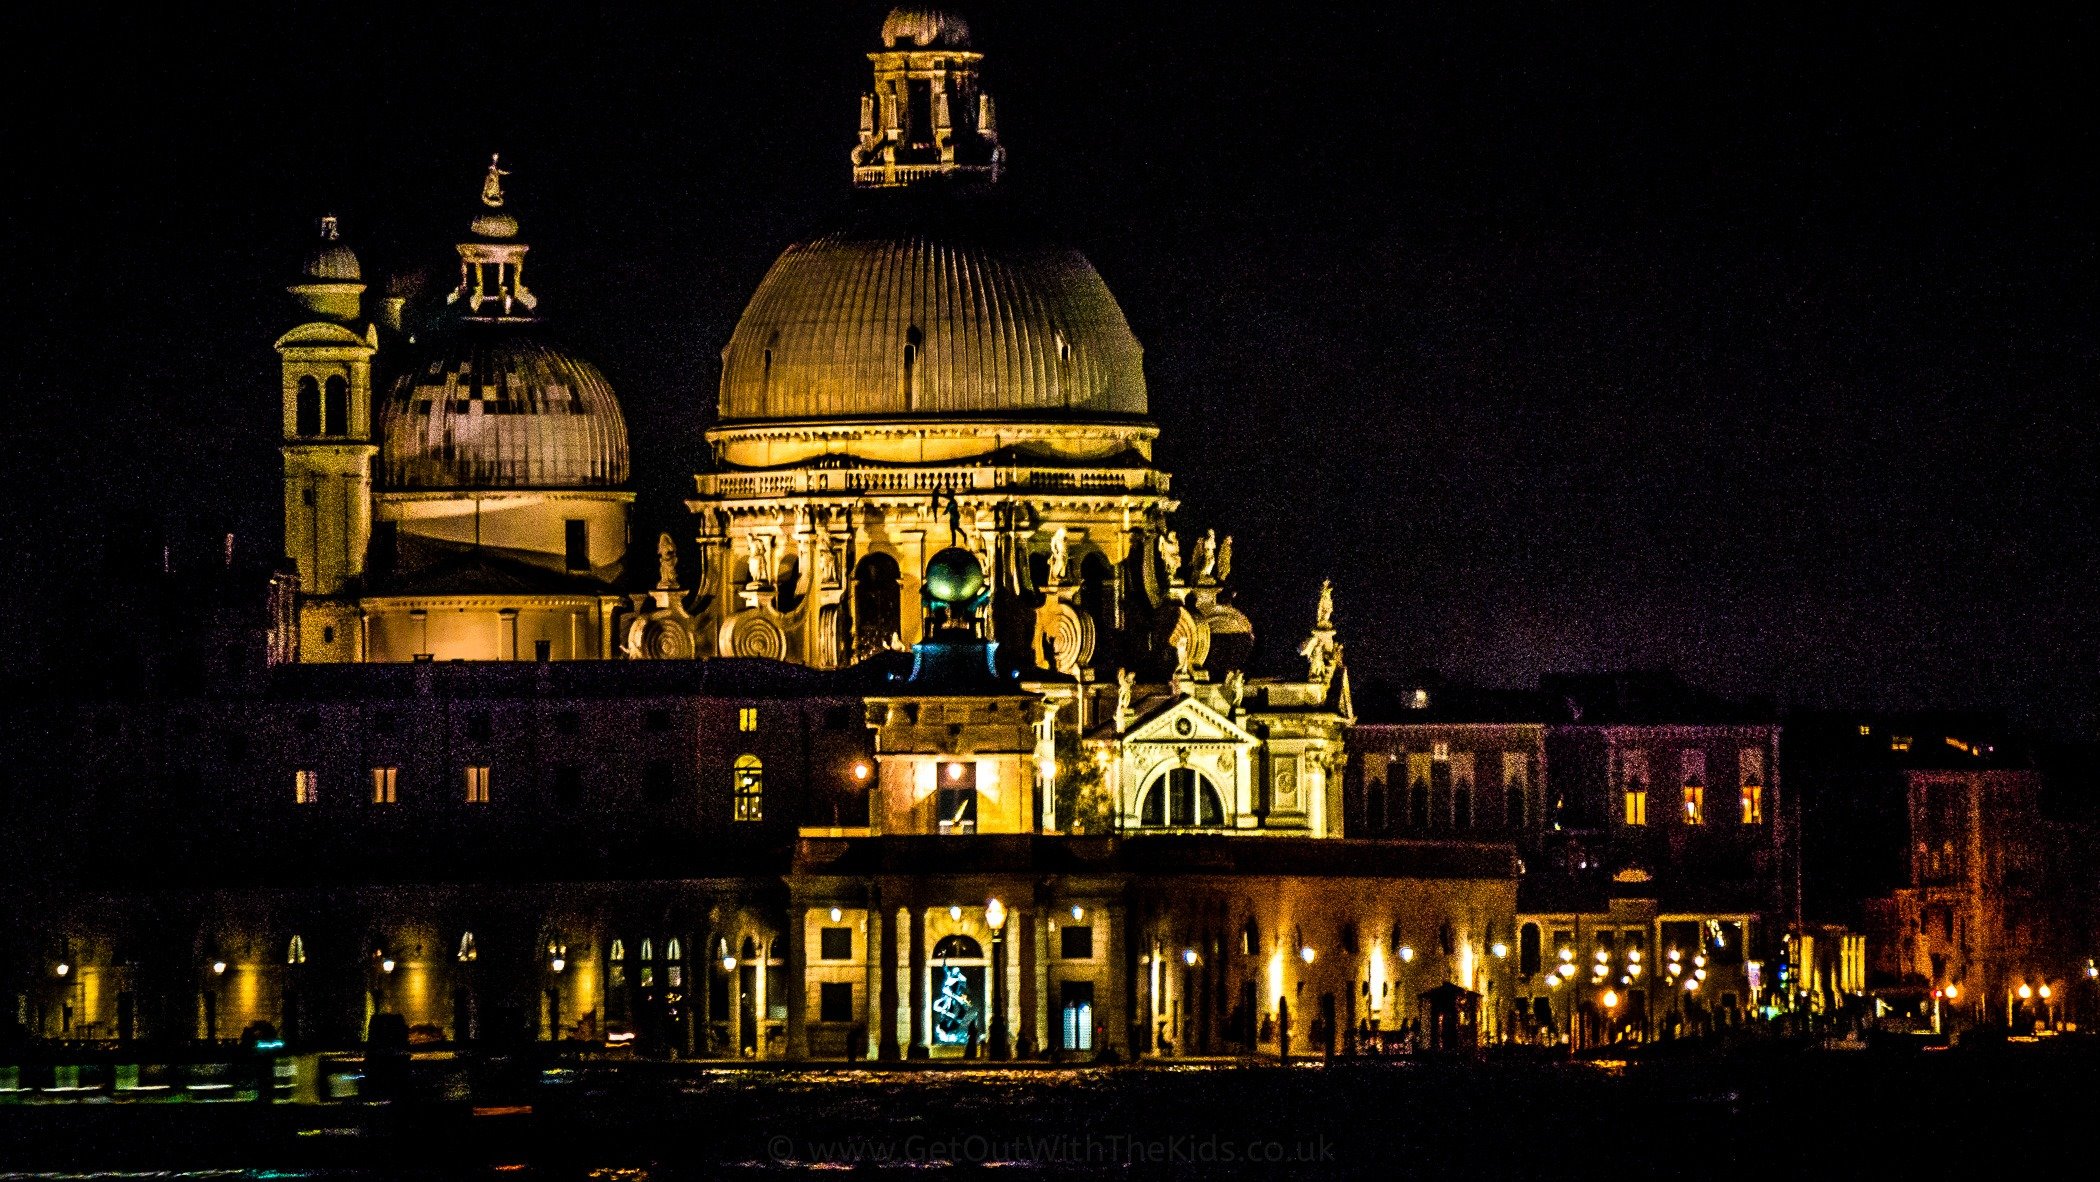 The Basilica at Night